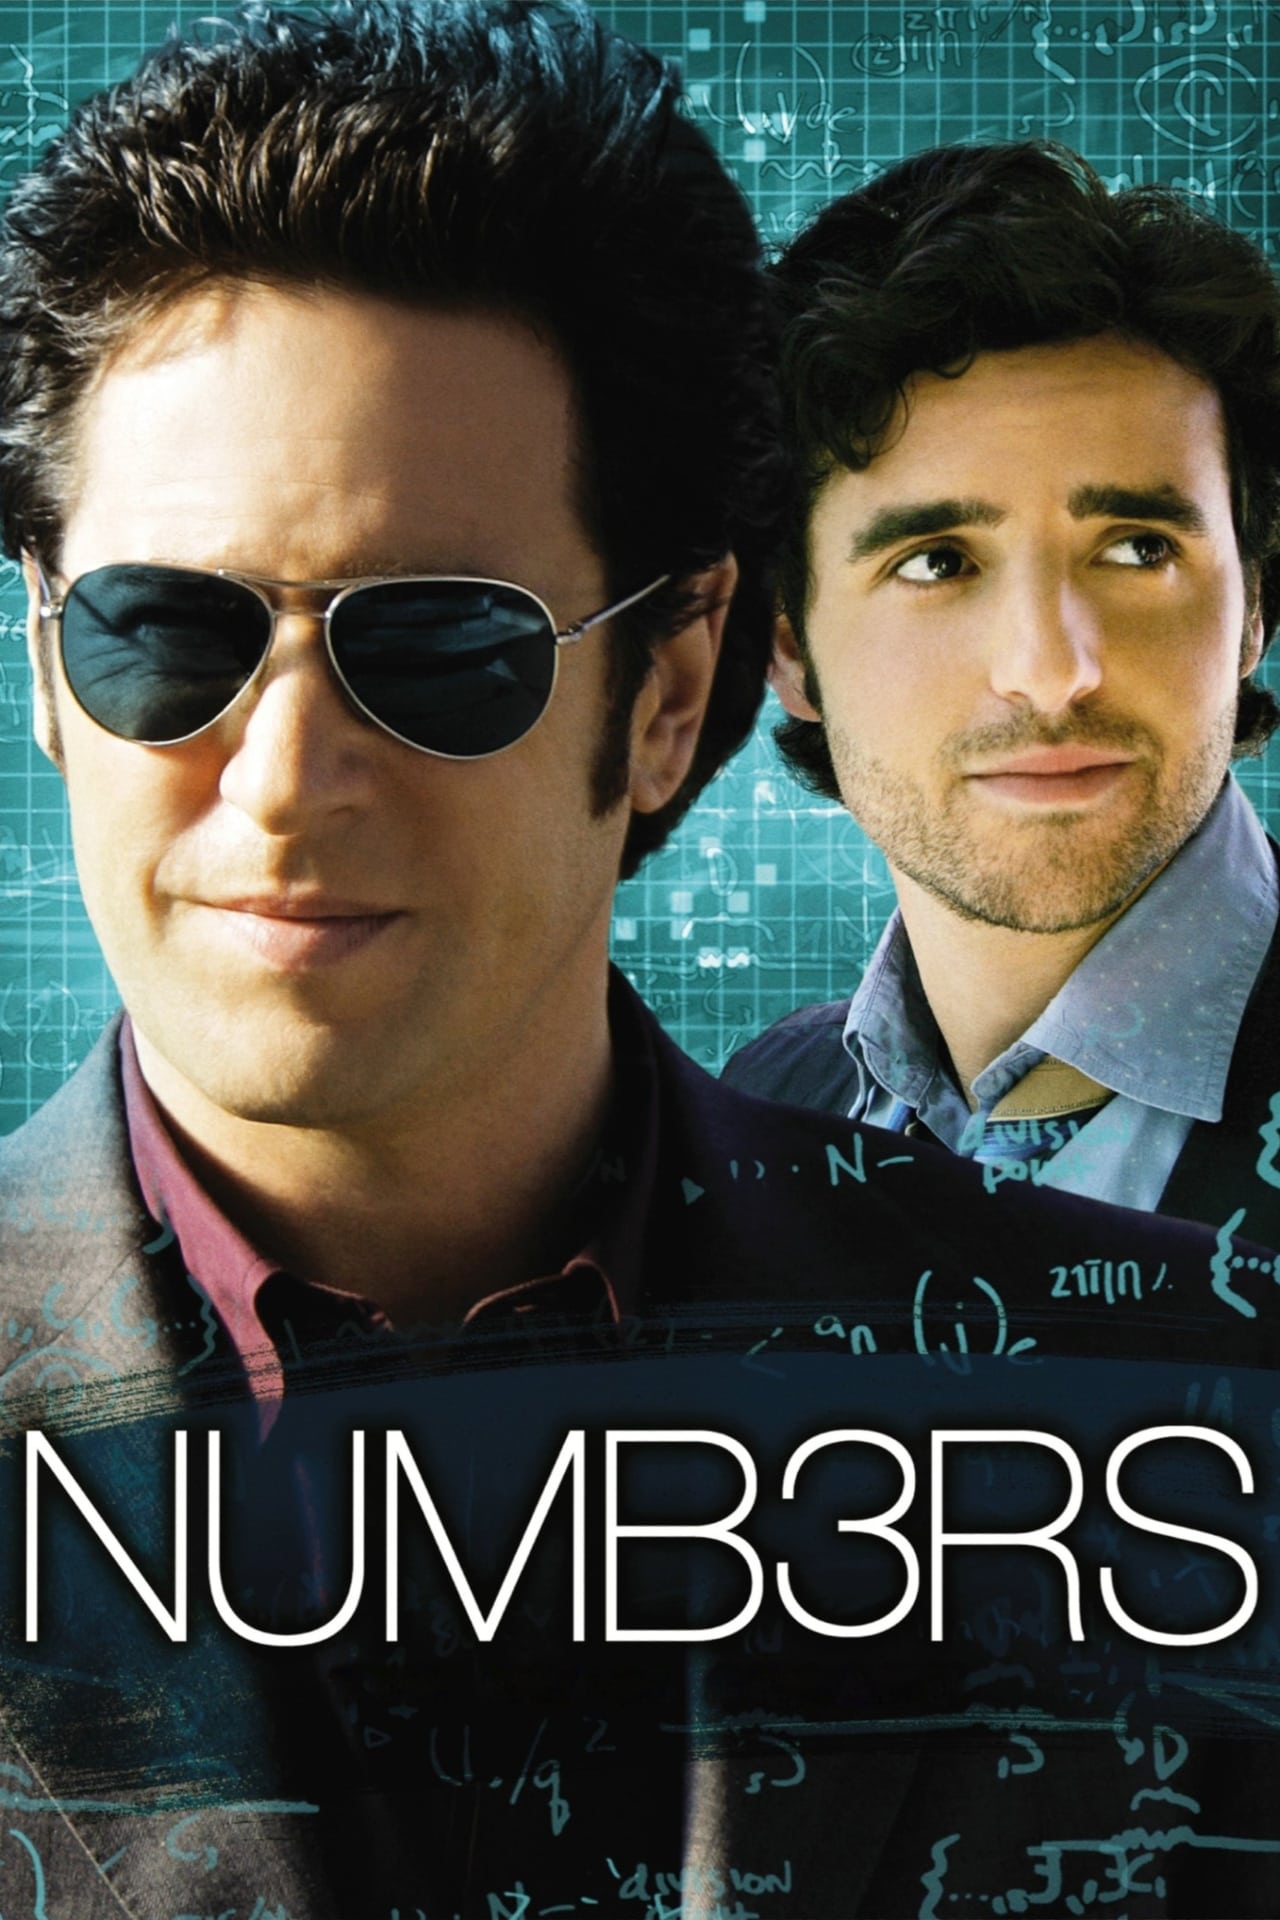 Numb3rs (season 3)